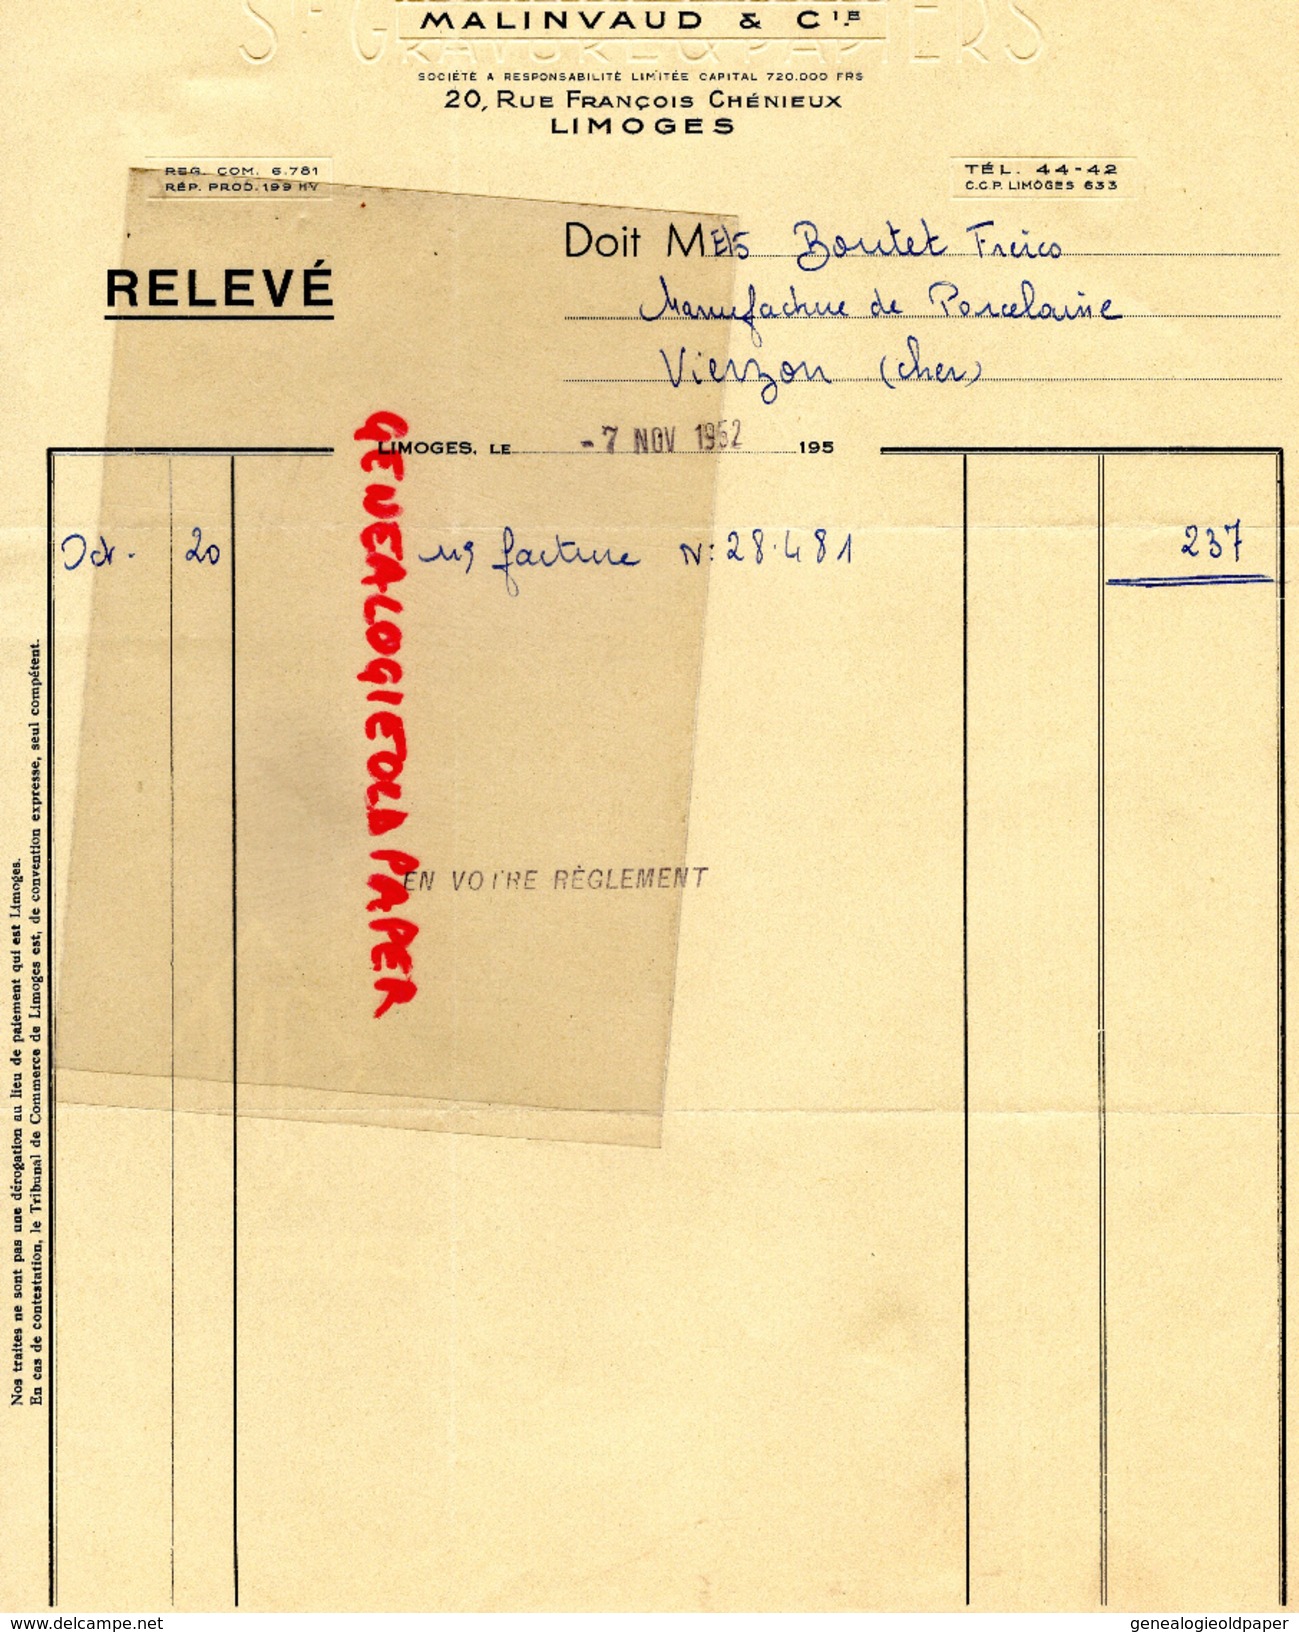 87 - LIMOGES - FACTURE MALINVAUD - IMPRIMERIE GRAVURE -20 RUE FRANCOIS CHENIEUX-1952 - Imprimerie & Papeterie